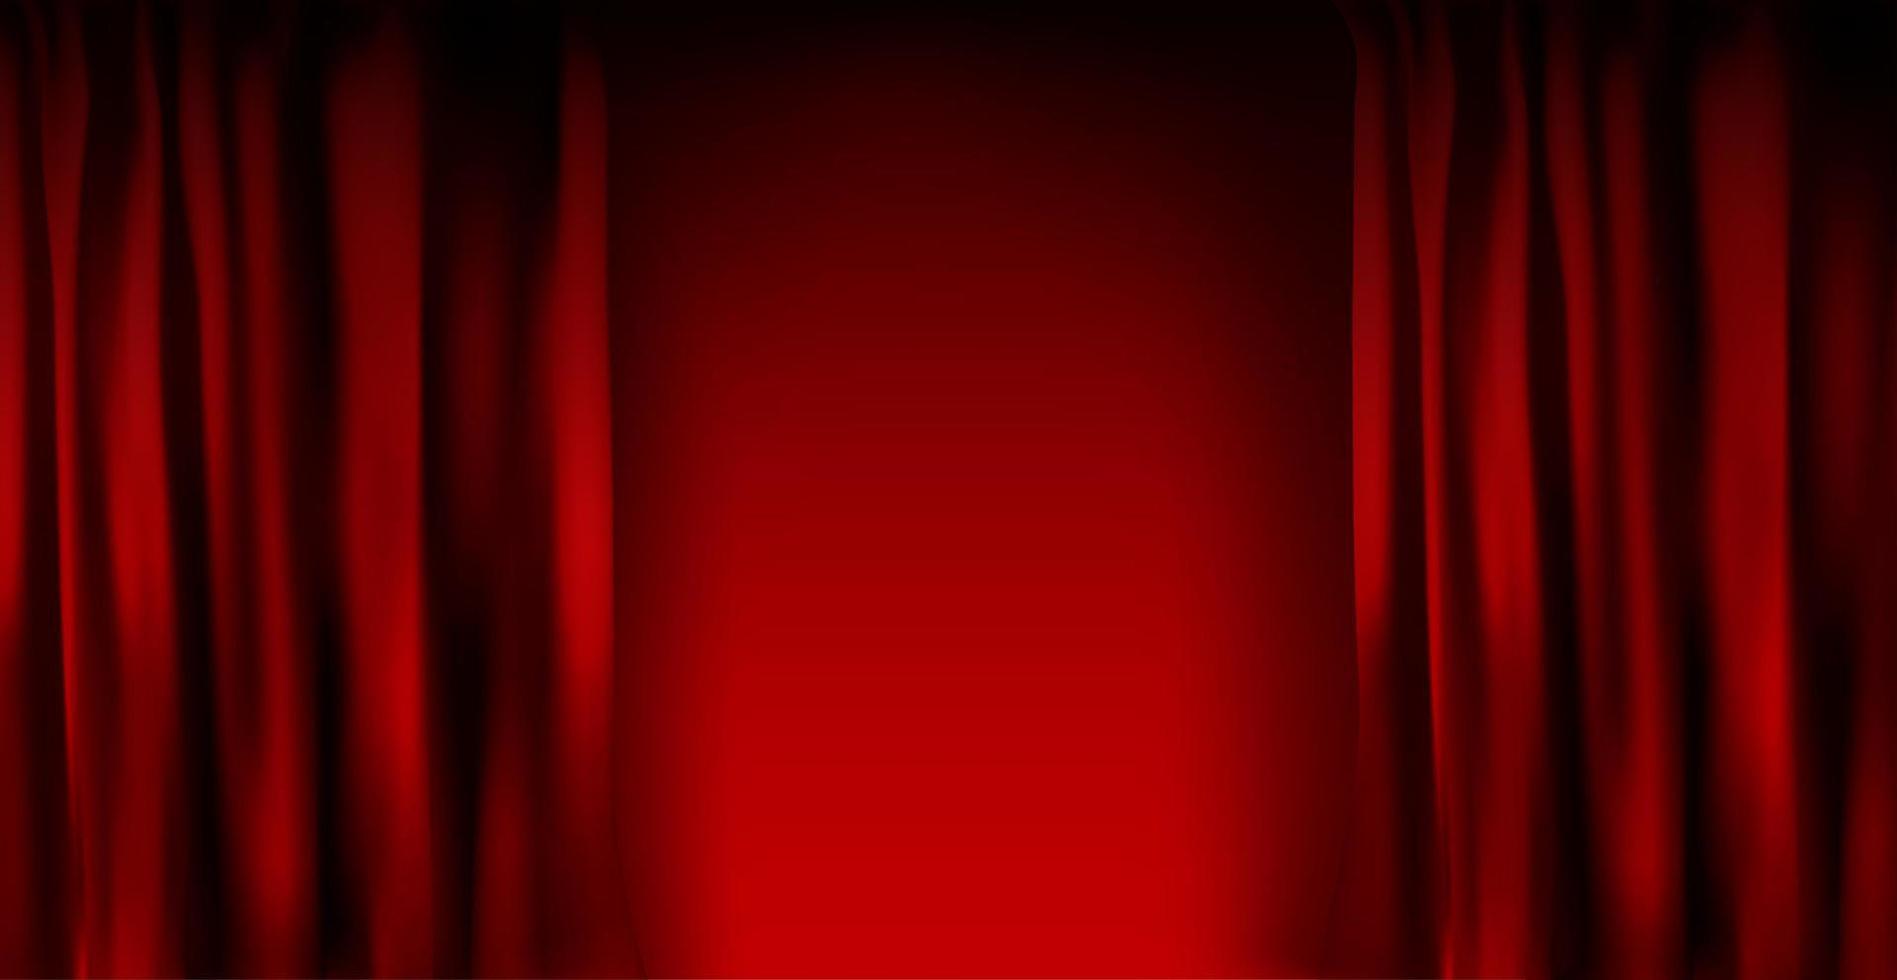 cortina de terciopelo rojo colorido realista doblada. Opción cortina a domicilio en el cine. ilustración vectorial. vector